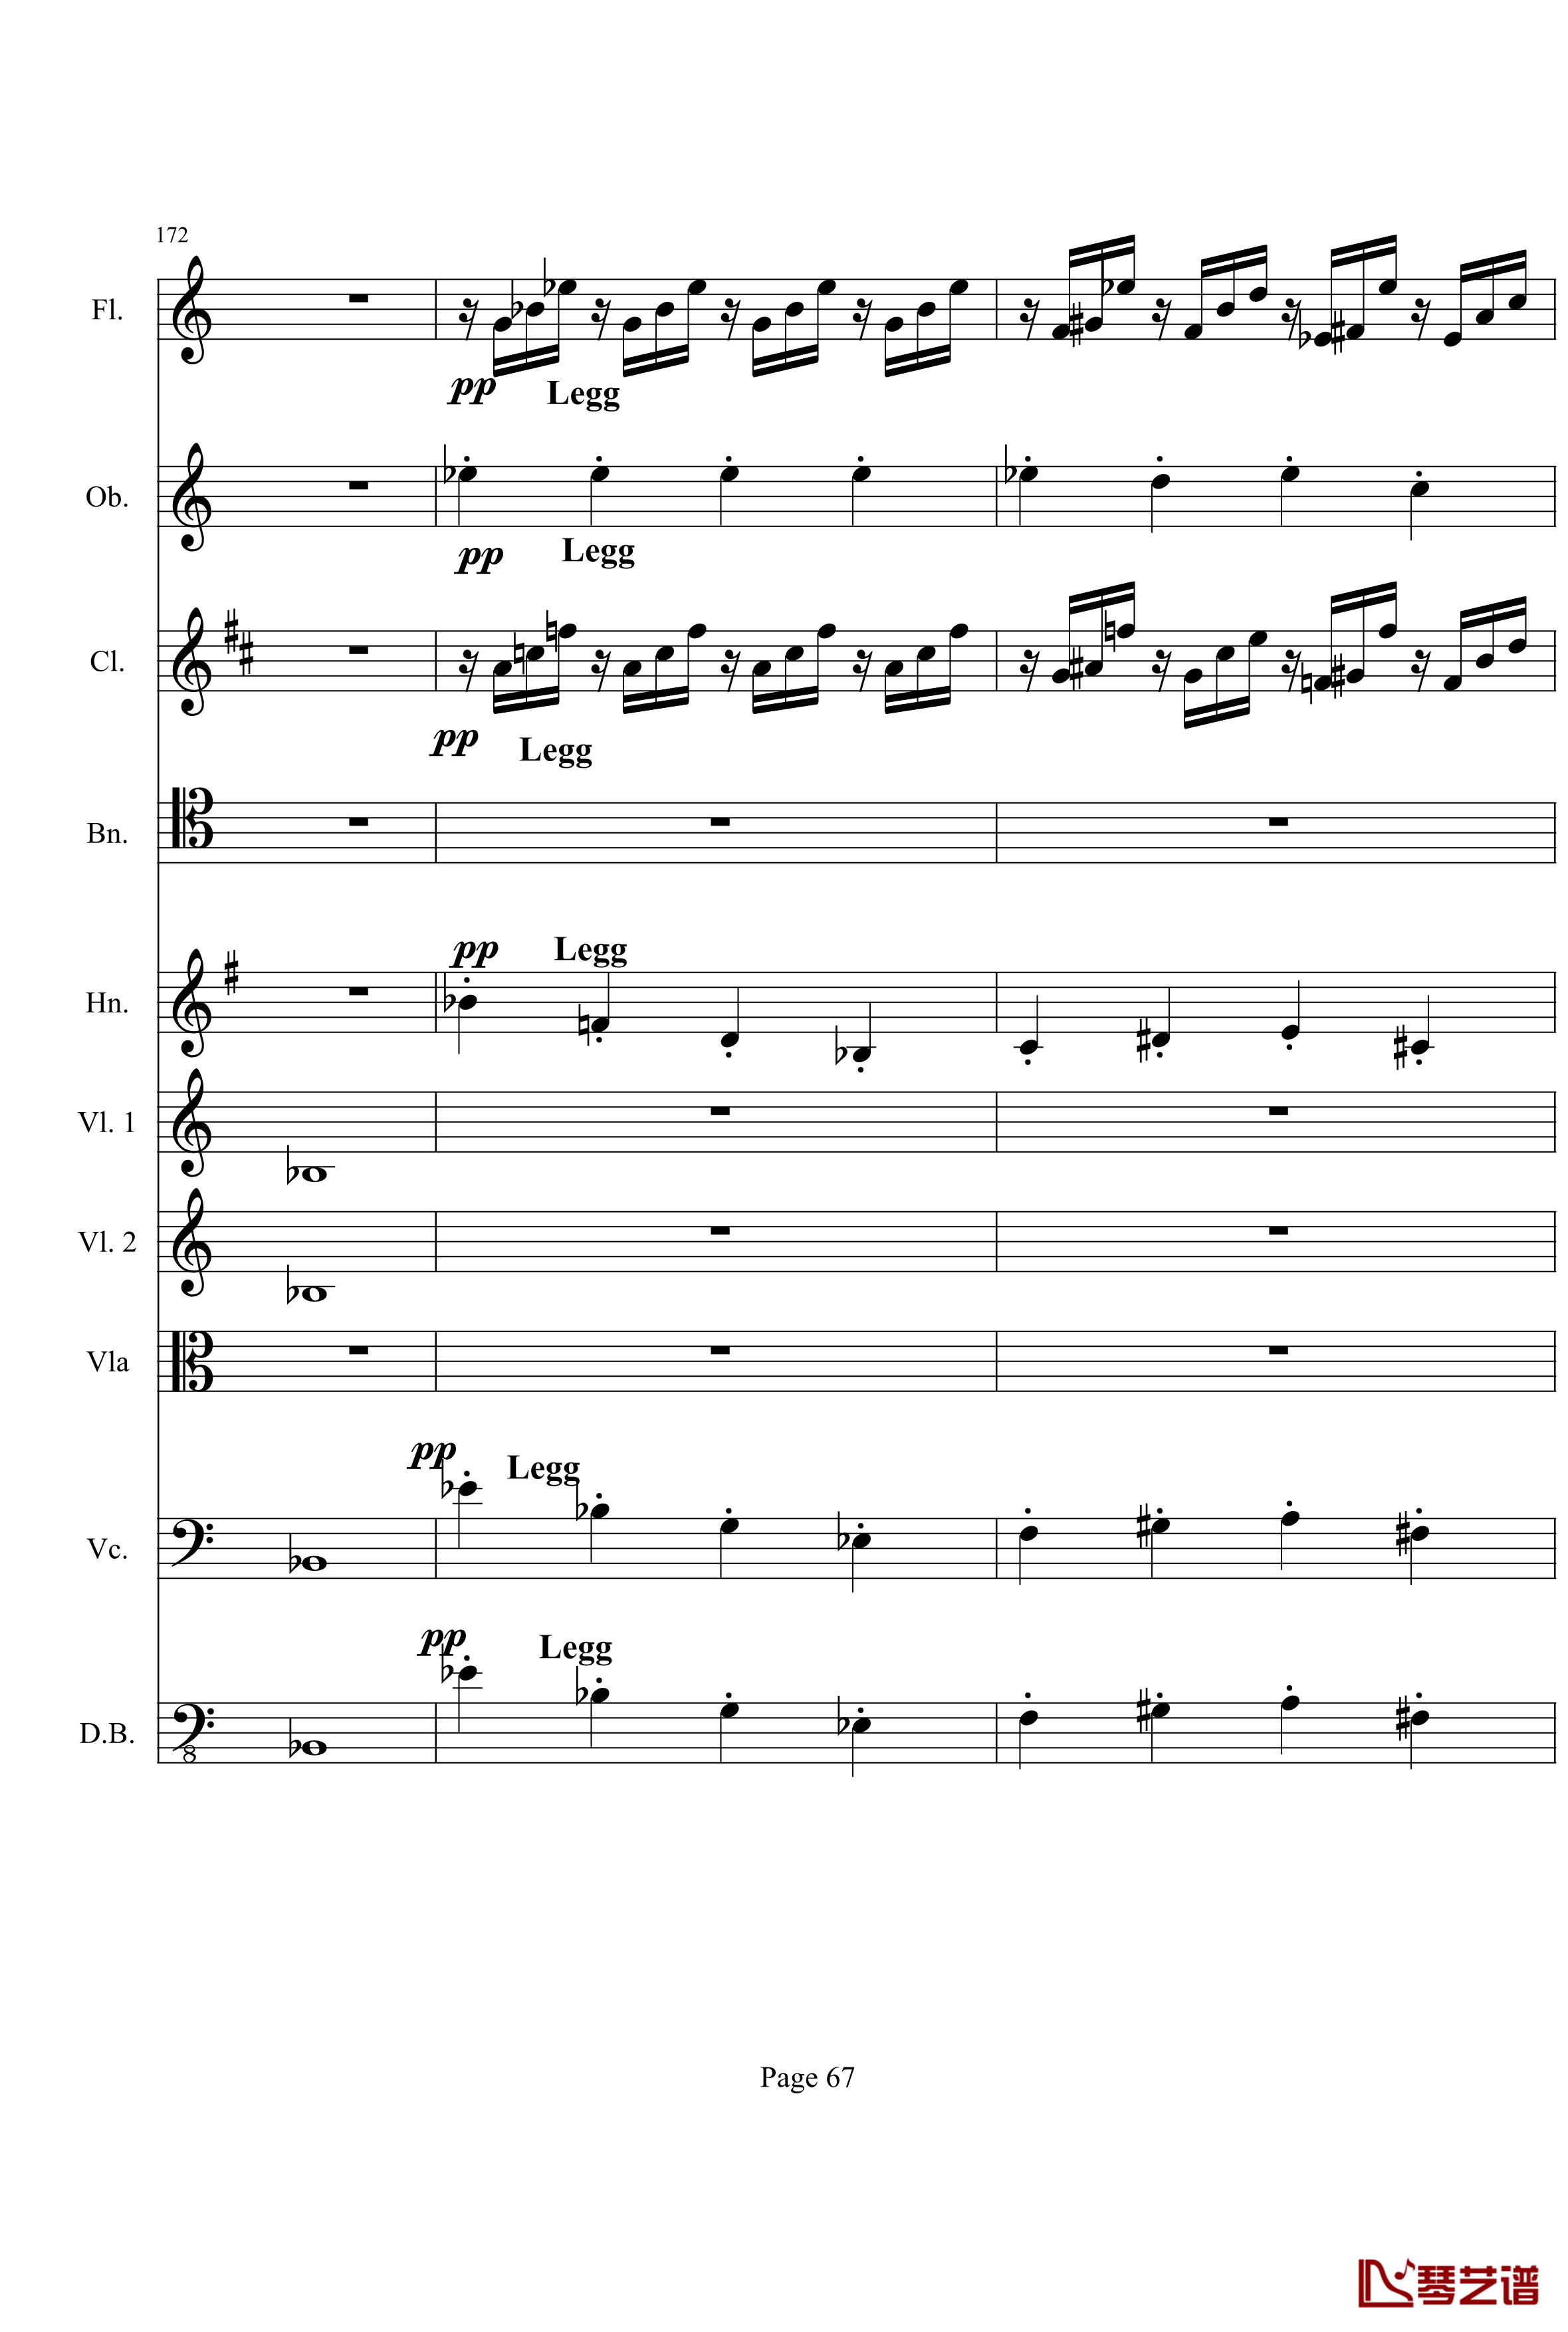 奏鸣曲之交响钢琴谱-第21-Ⅰ-贝多芬-beethoven67